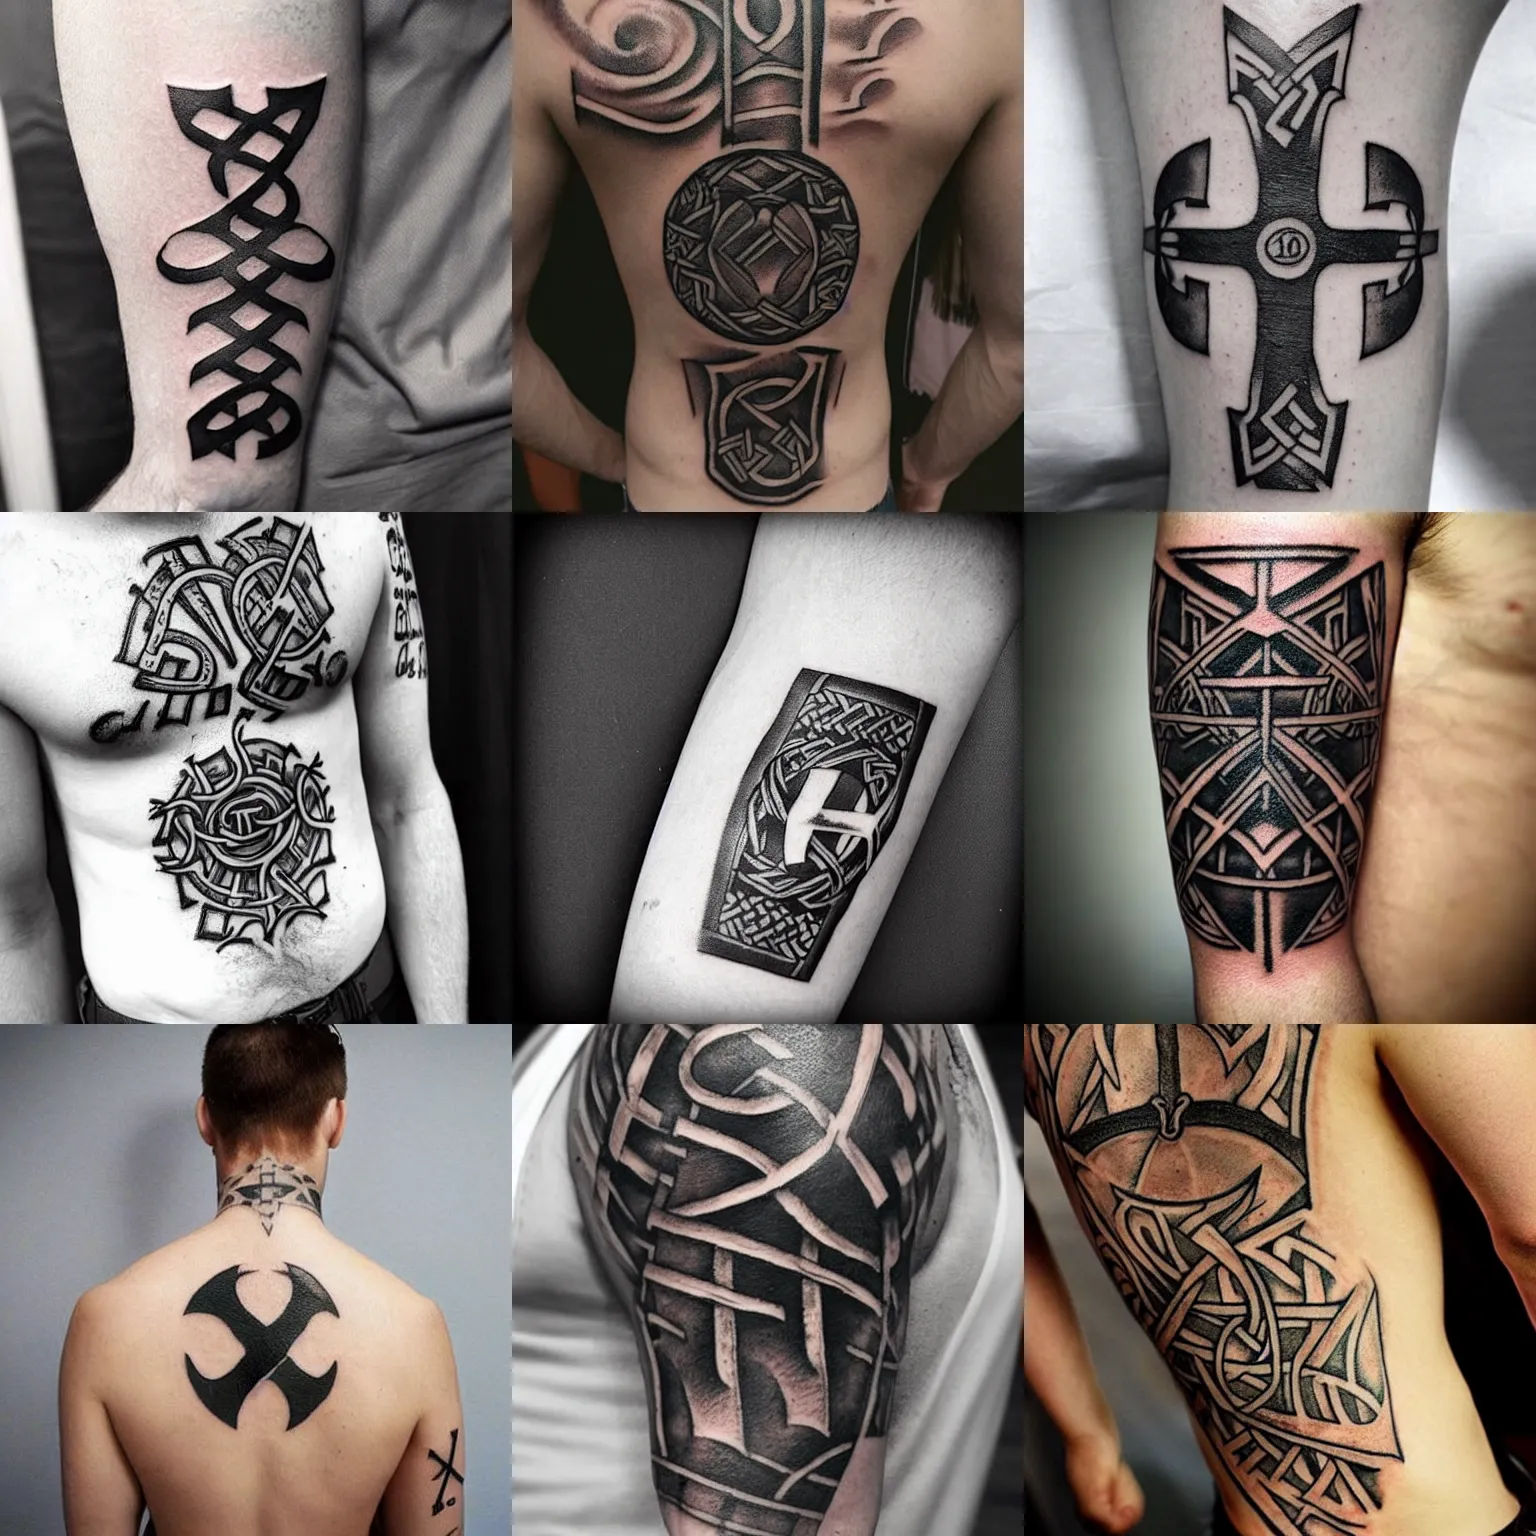 Berserk Tattoo Design | Tattoos, Tattoo designs, Minimalist tattoo